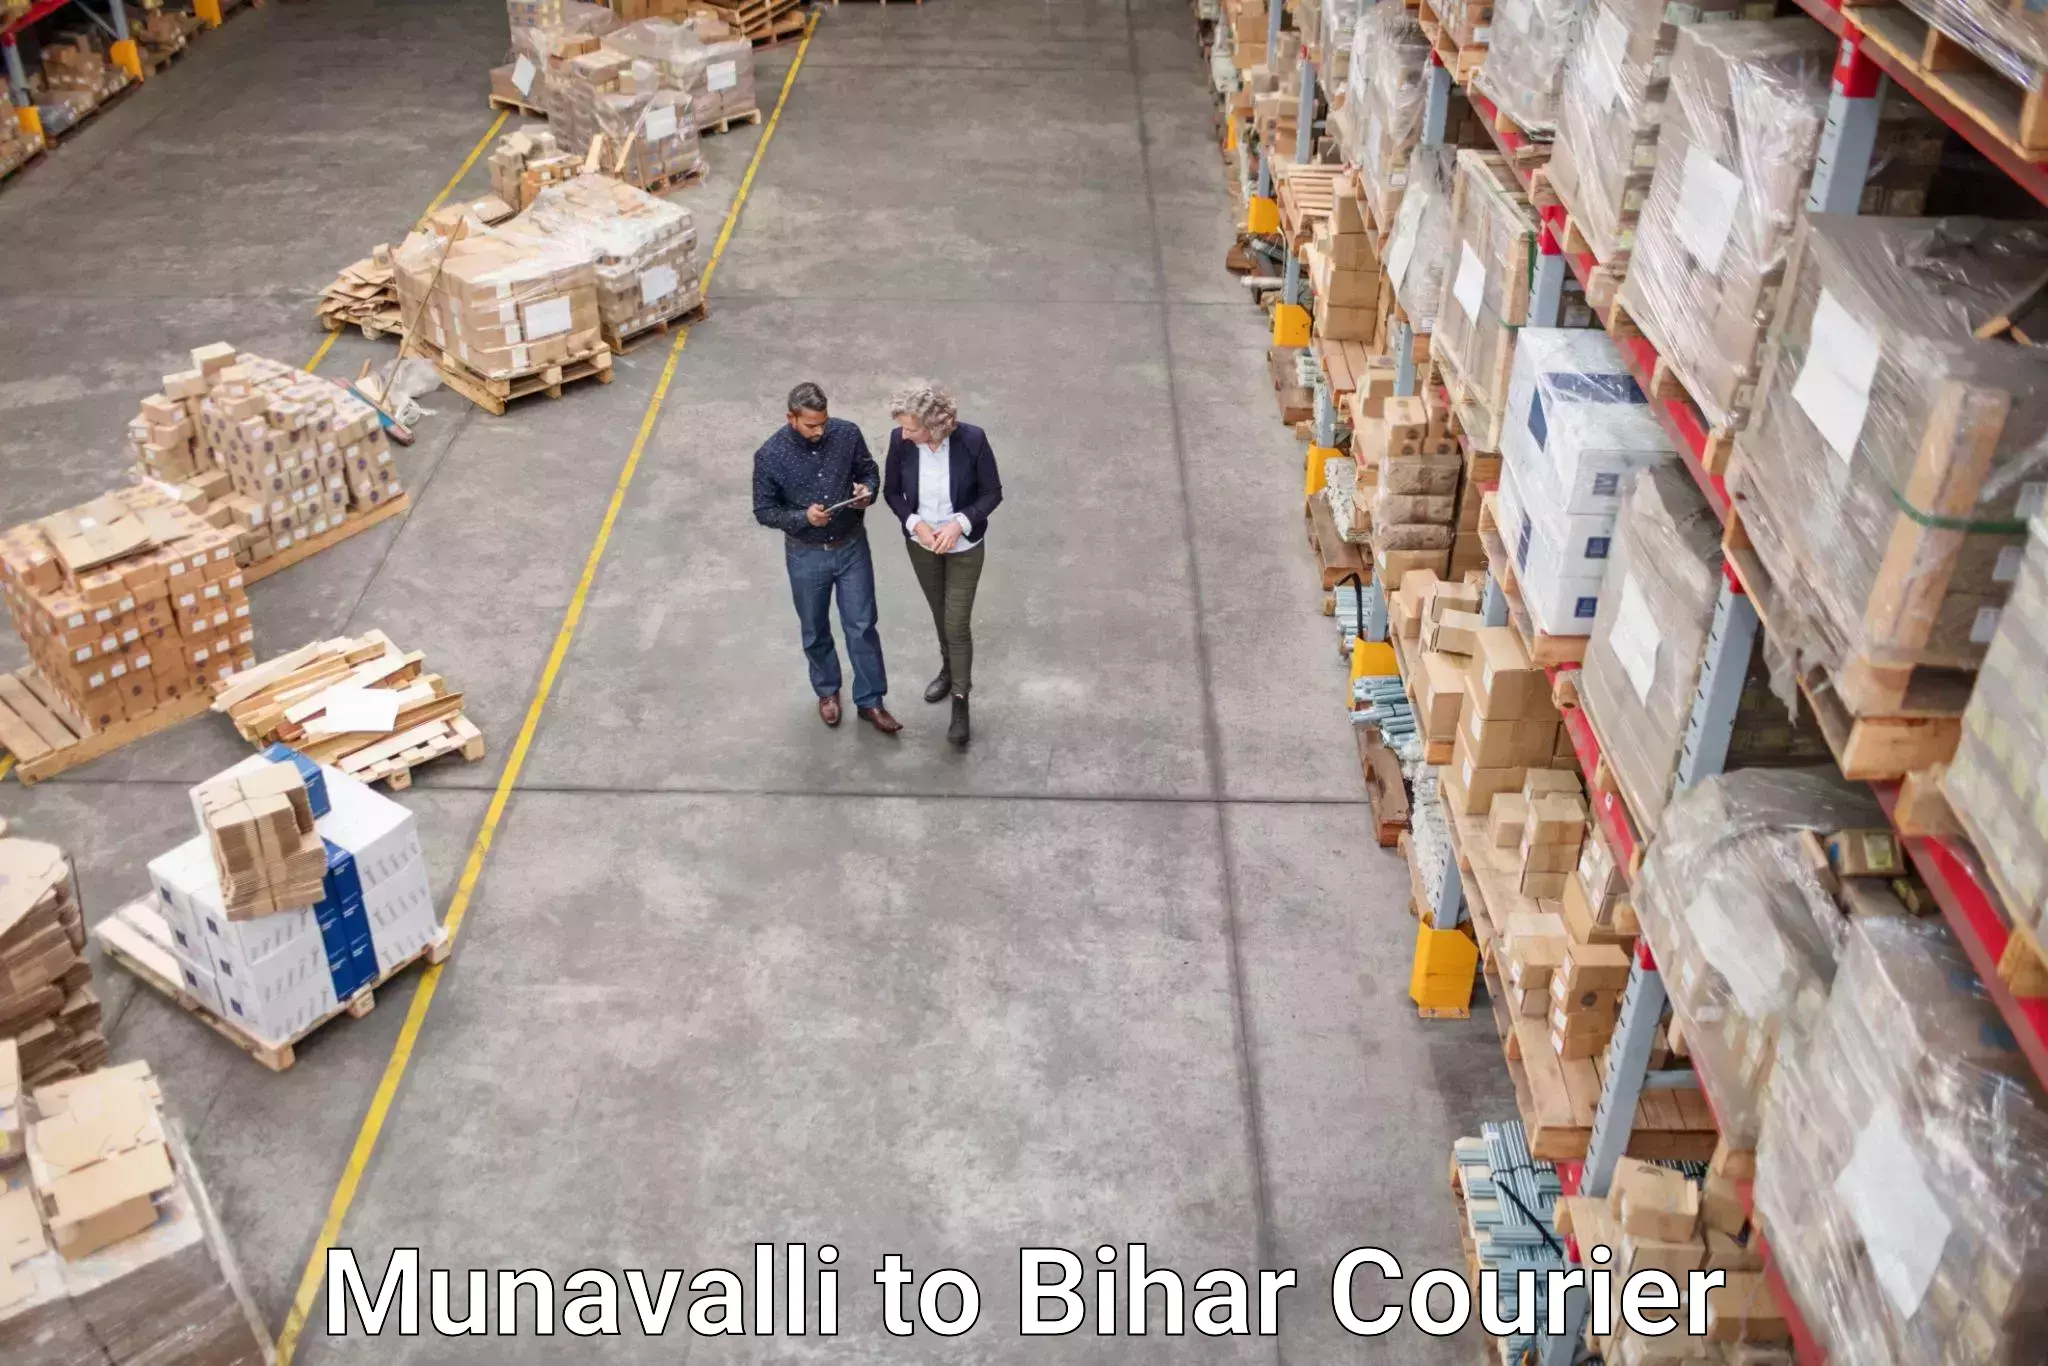 Courier service innovation Munavalli to Bihar